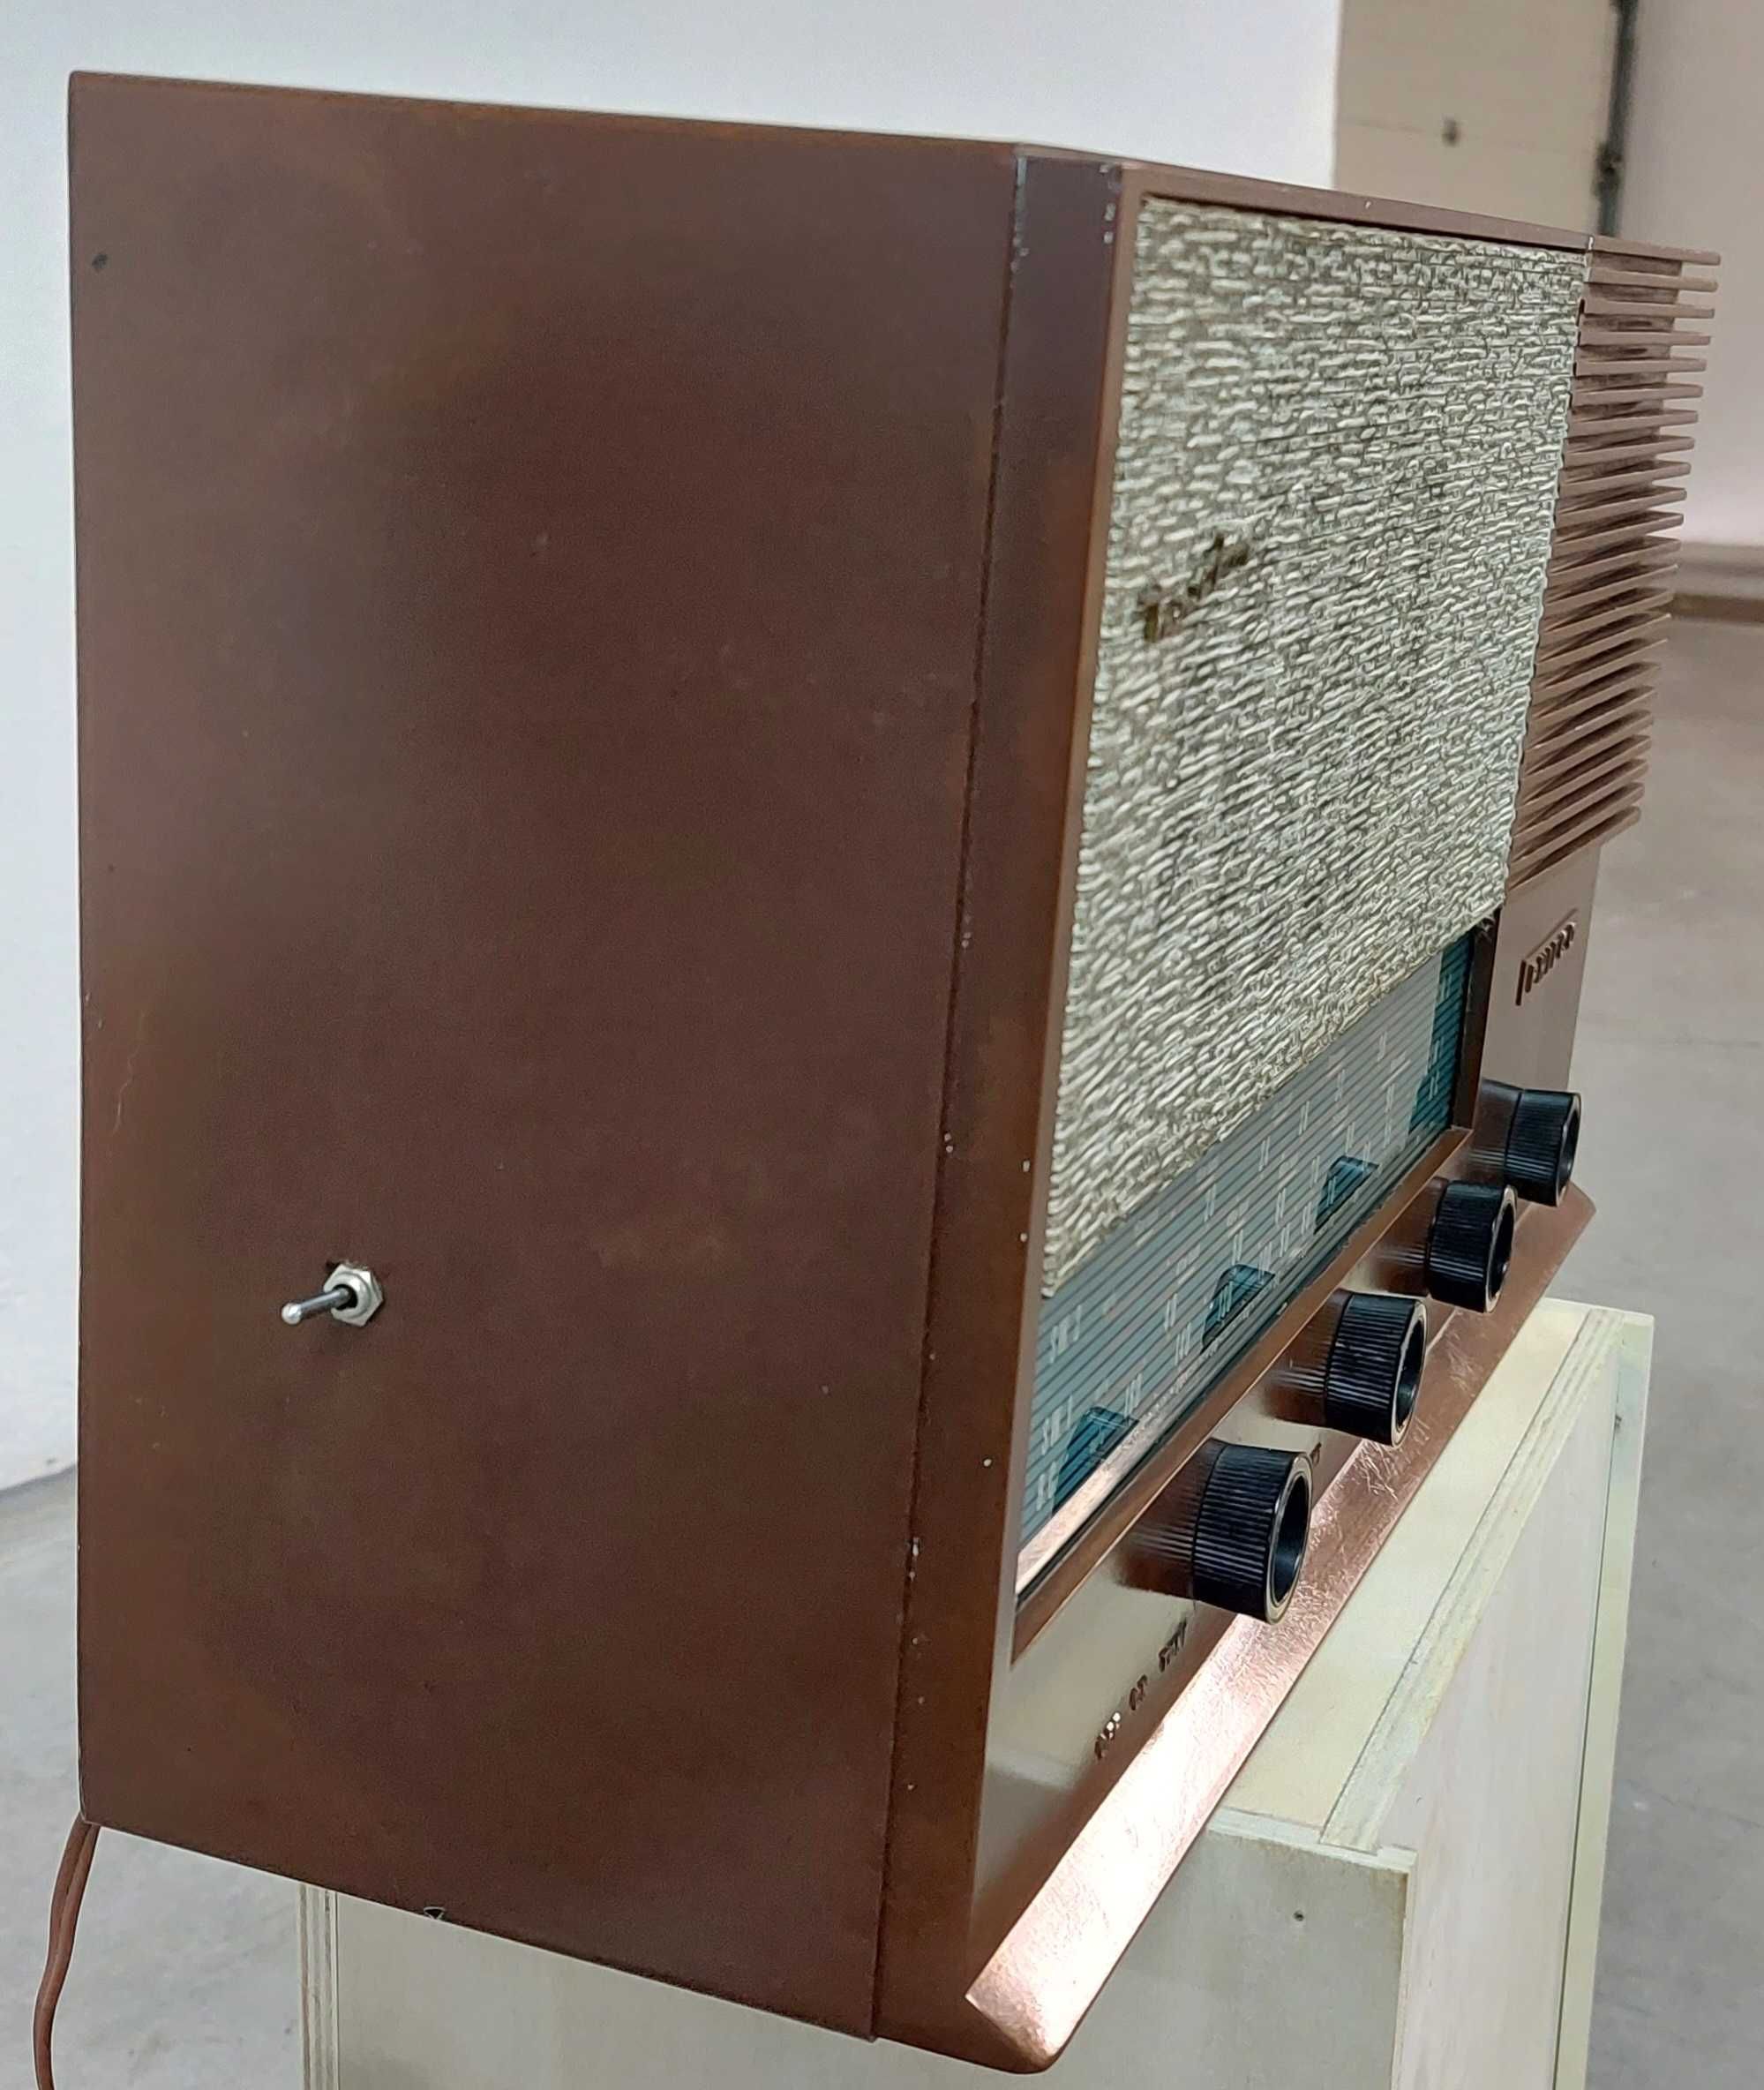 Rádio antigo Philco 303